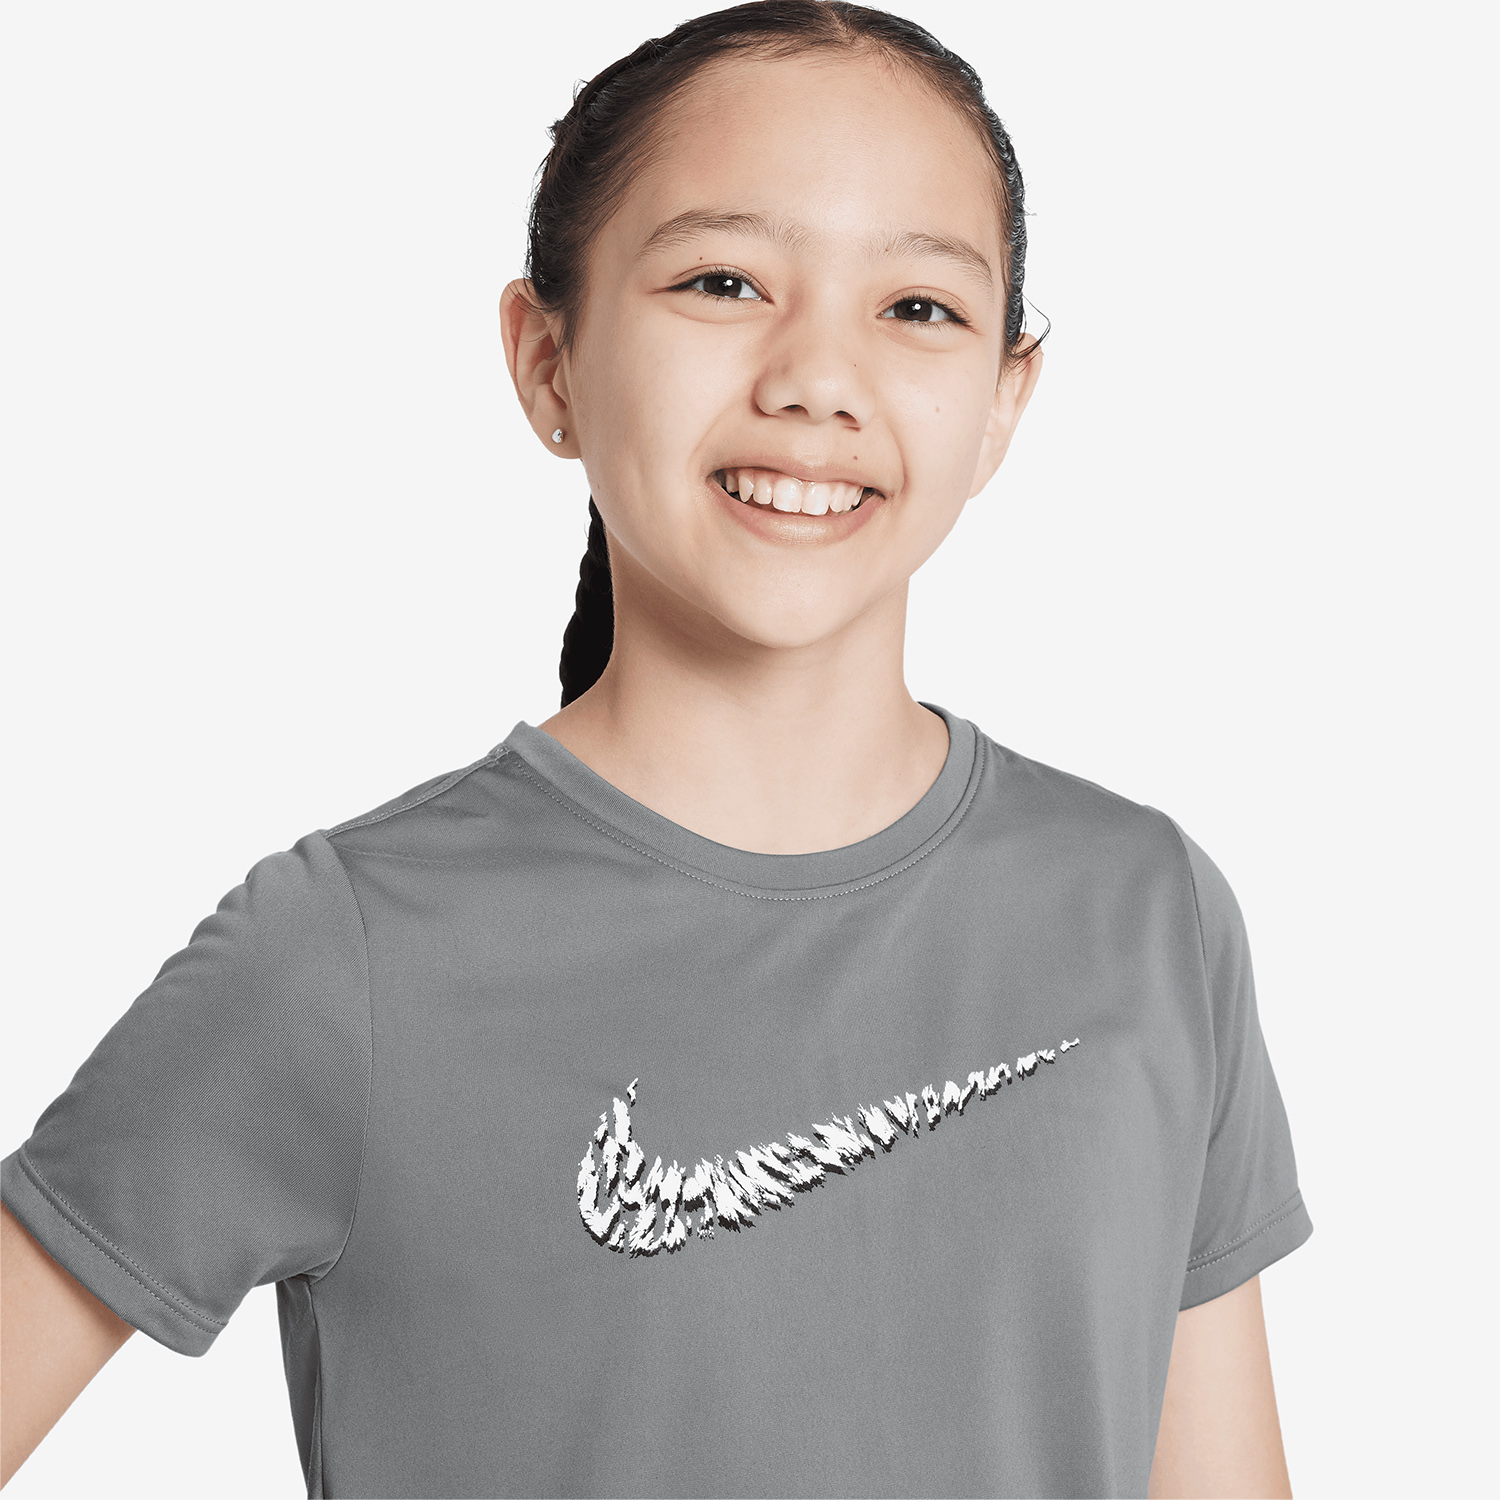 Nike One T-Shirt Girl - Smoke Grey